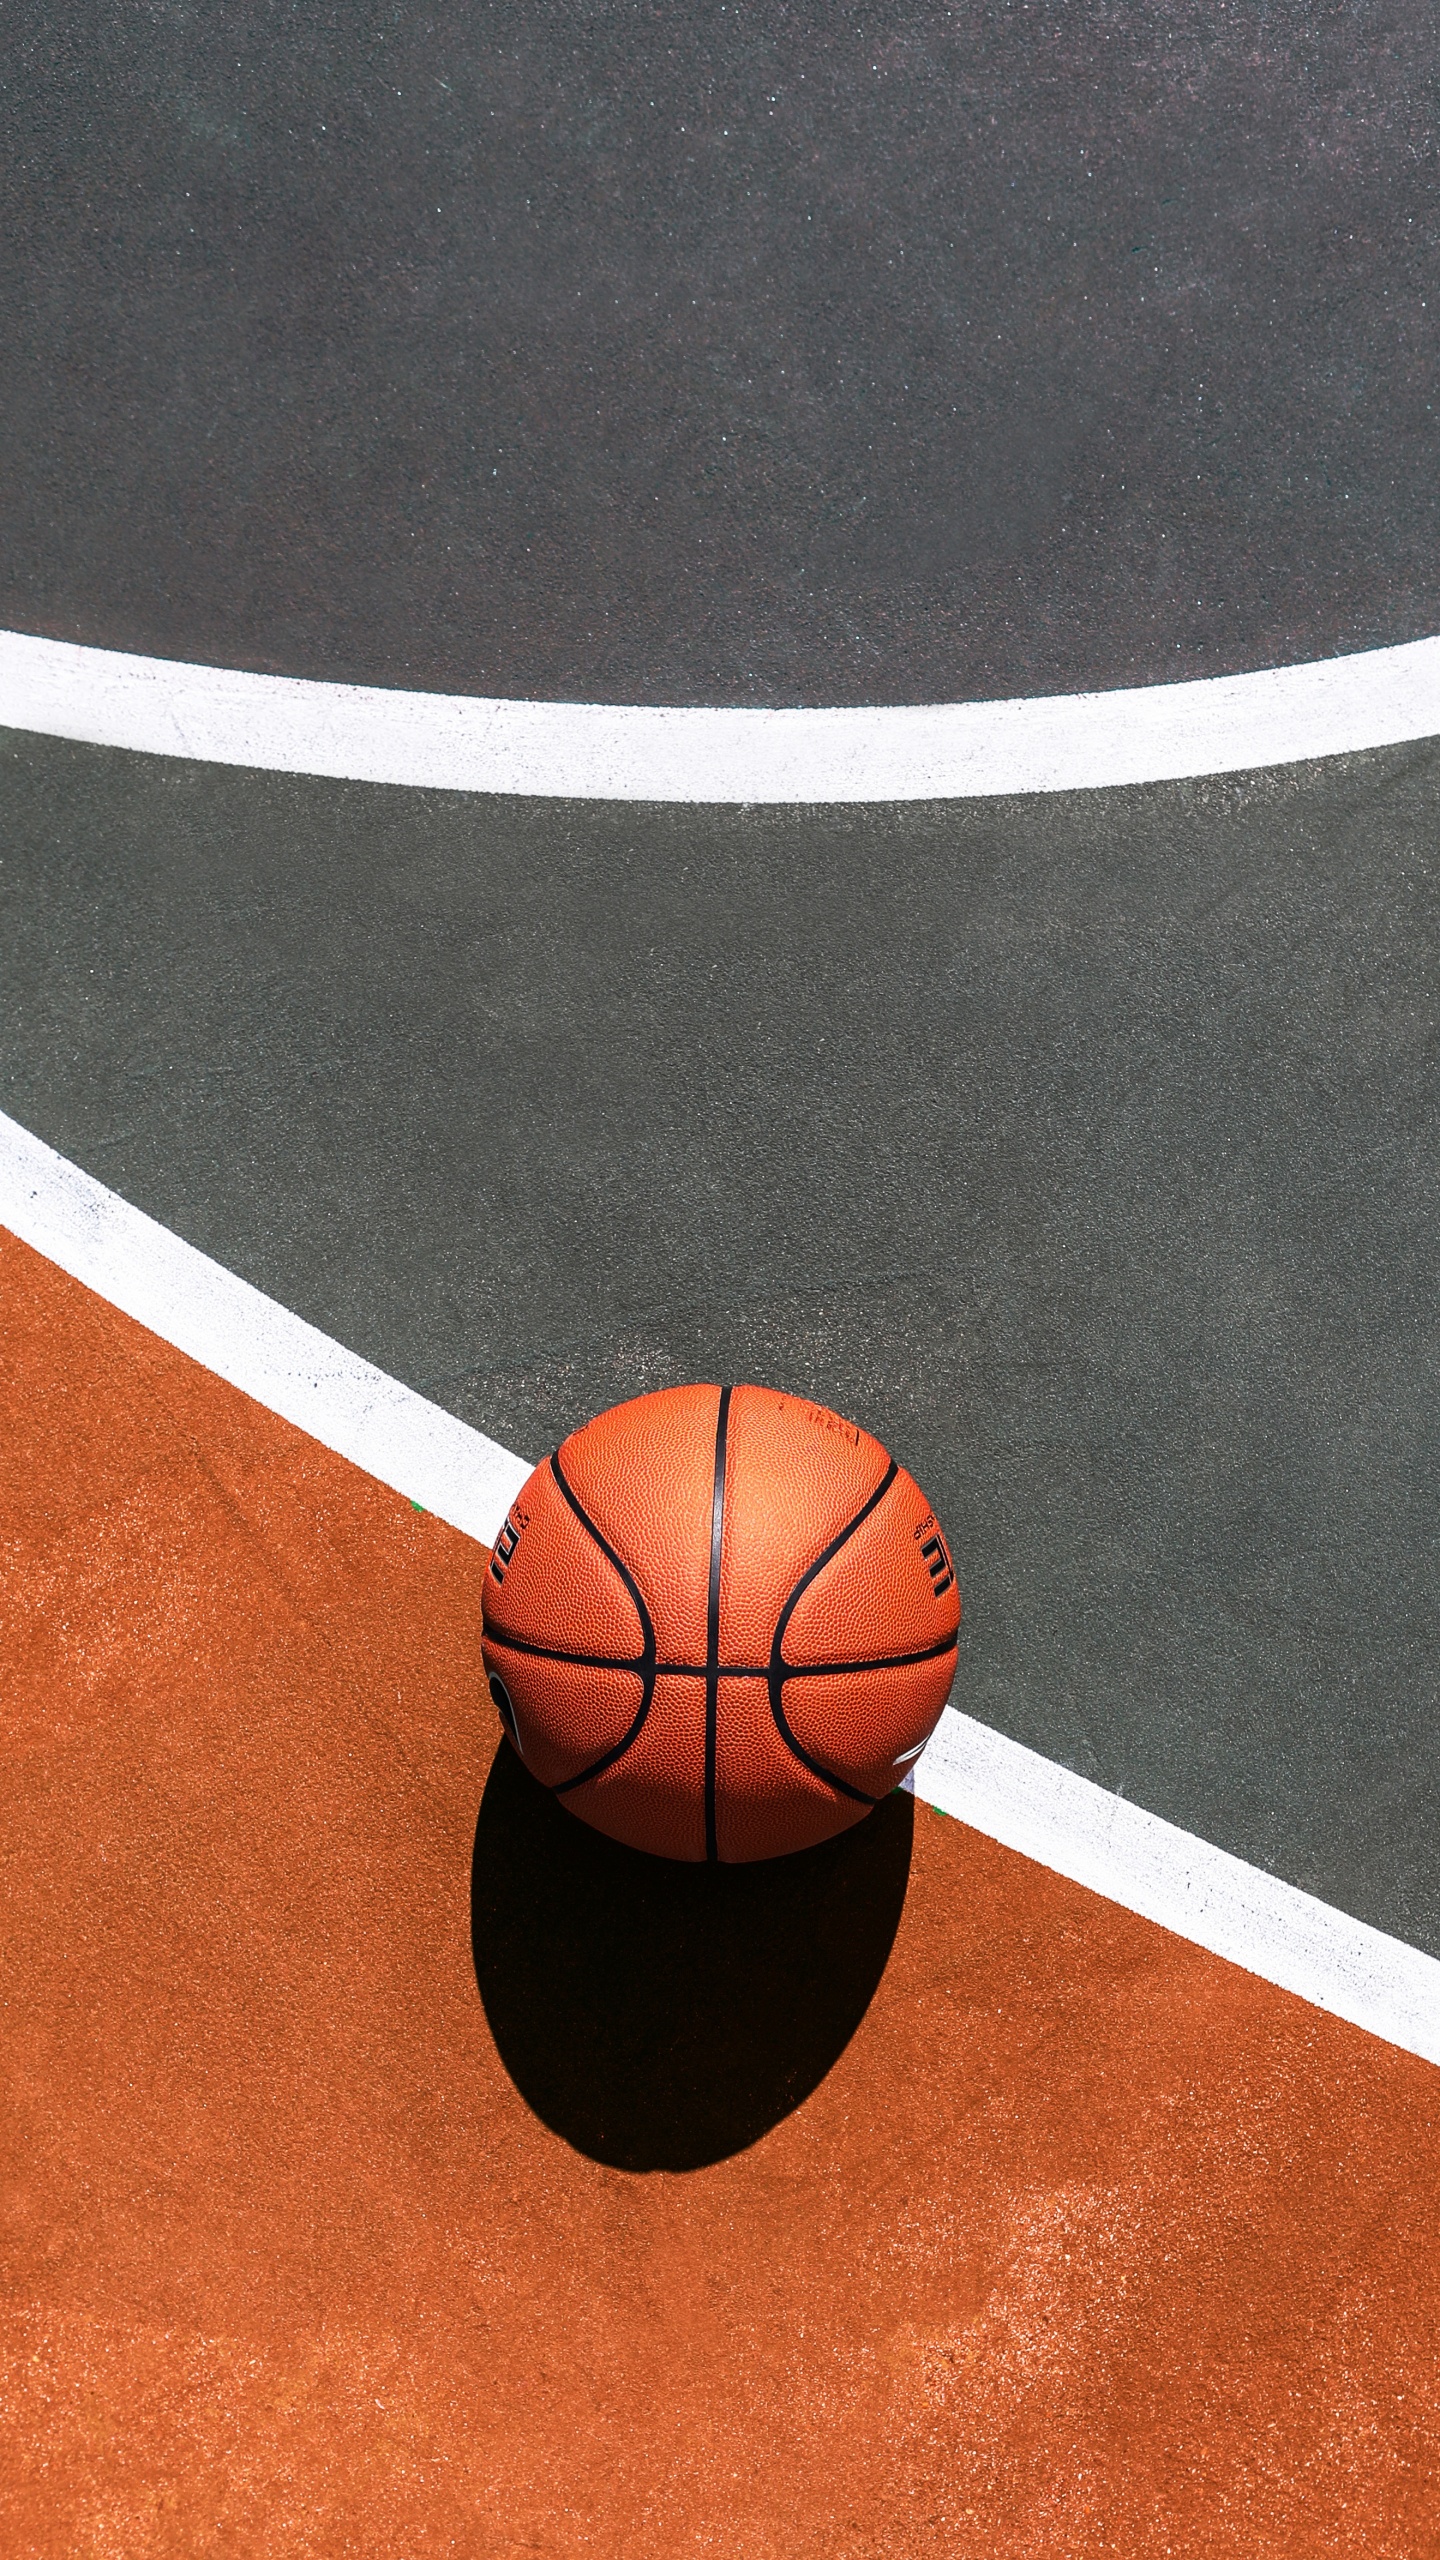 Basketball Auf Blau-weißem Basketballplatz. Wallpaper in 1440x2560 Resolution